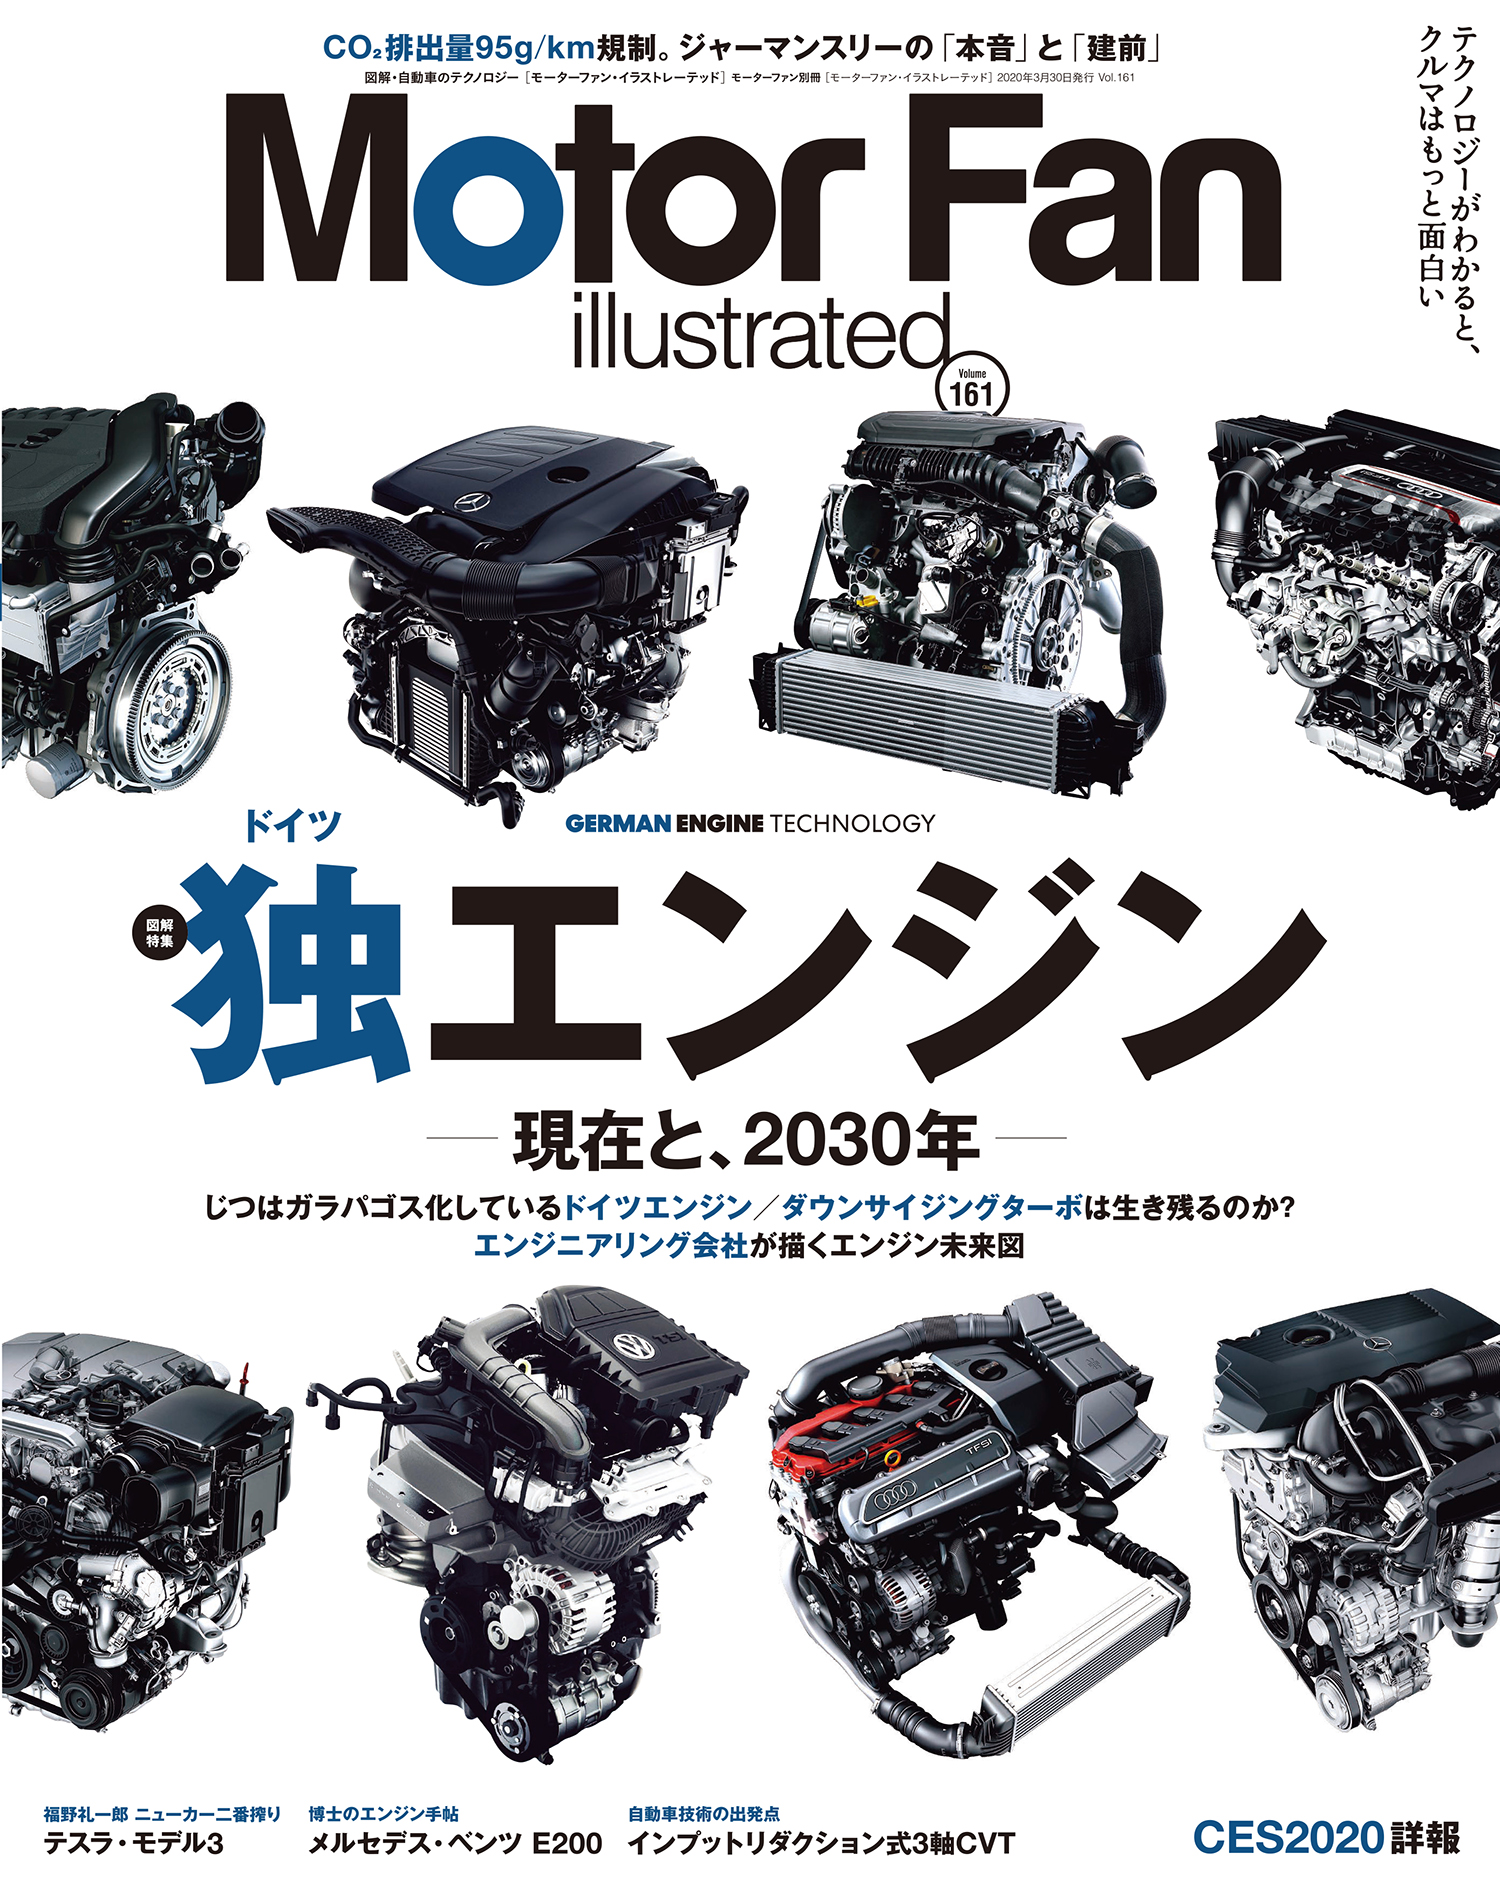 モーターファン イラストレーテッド Vol 161は 独 ドイツ エンジン 特集 三栄のプレスリリース